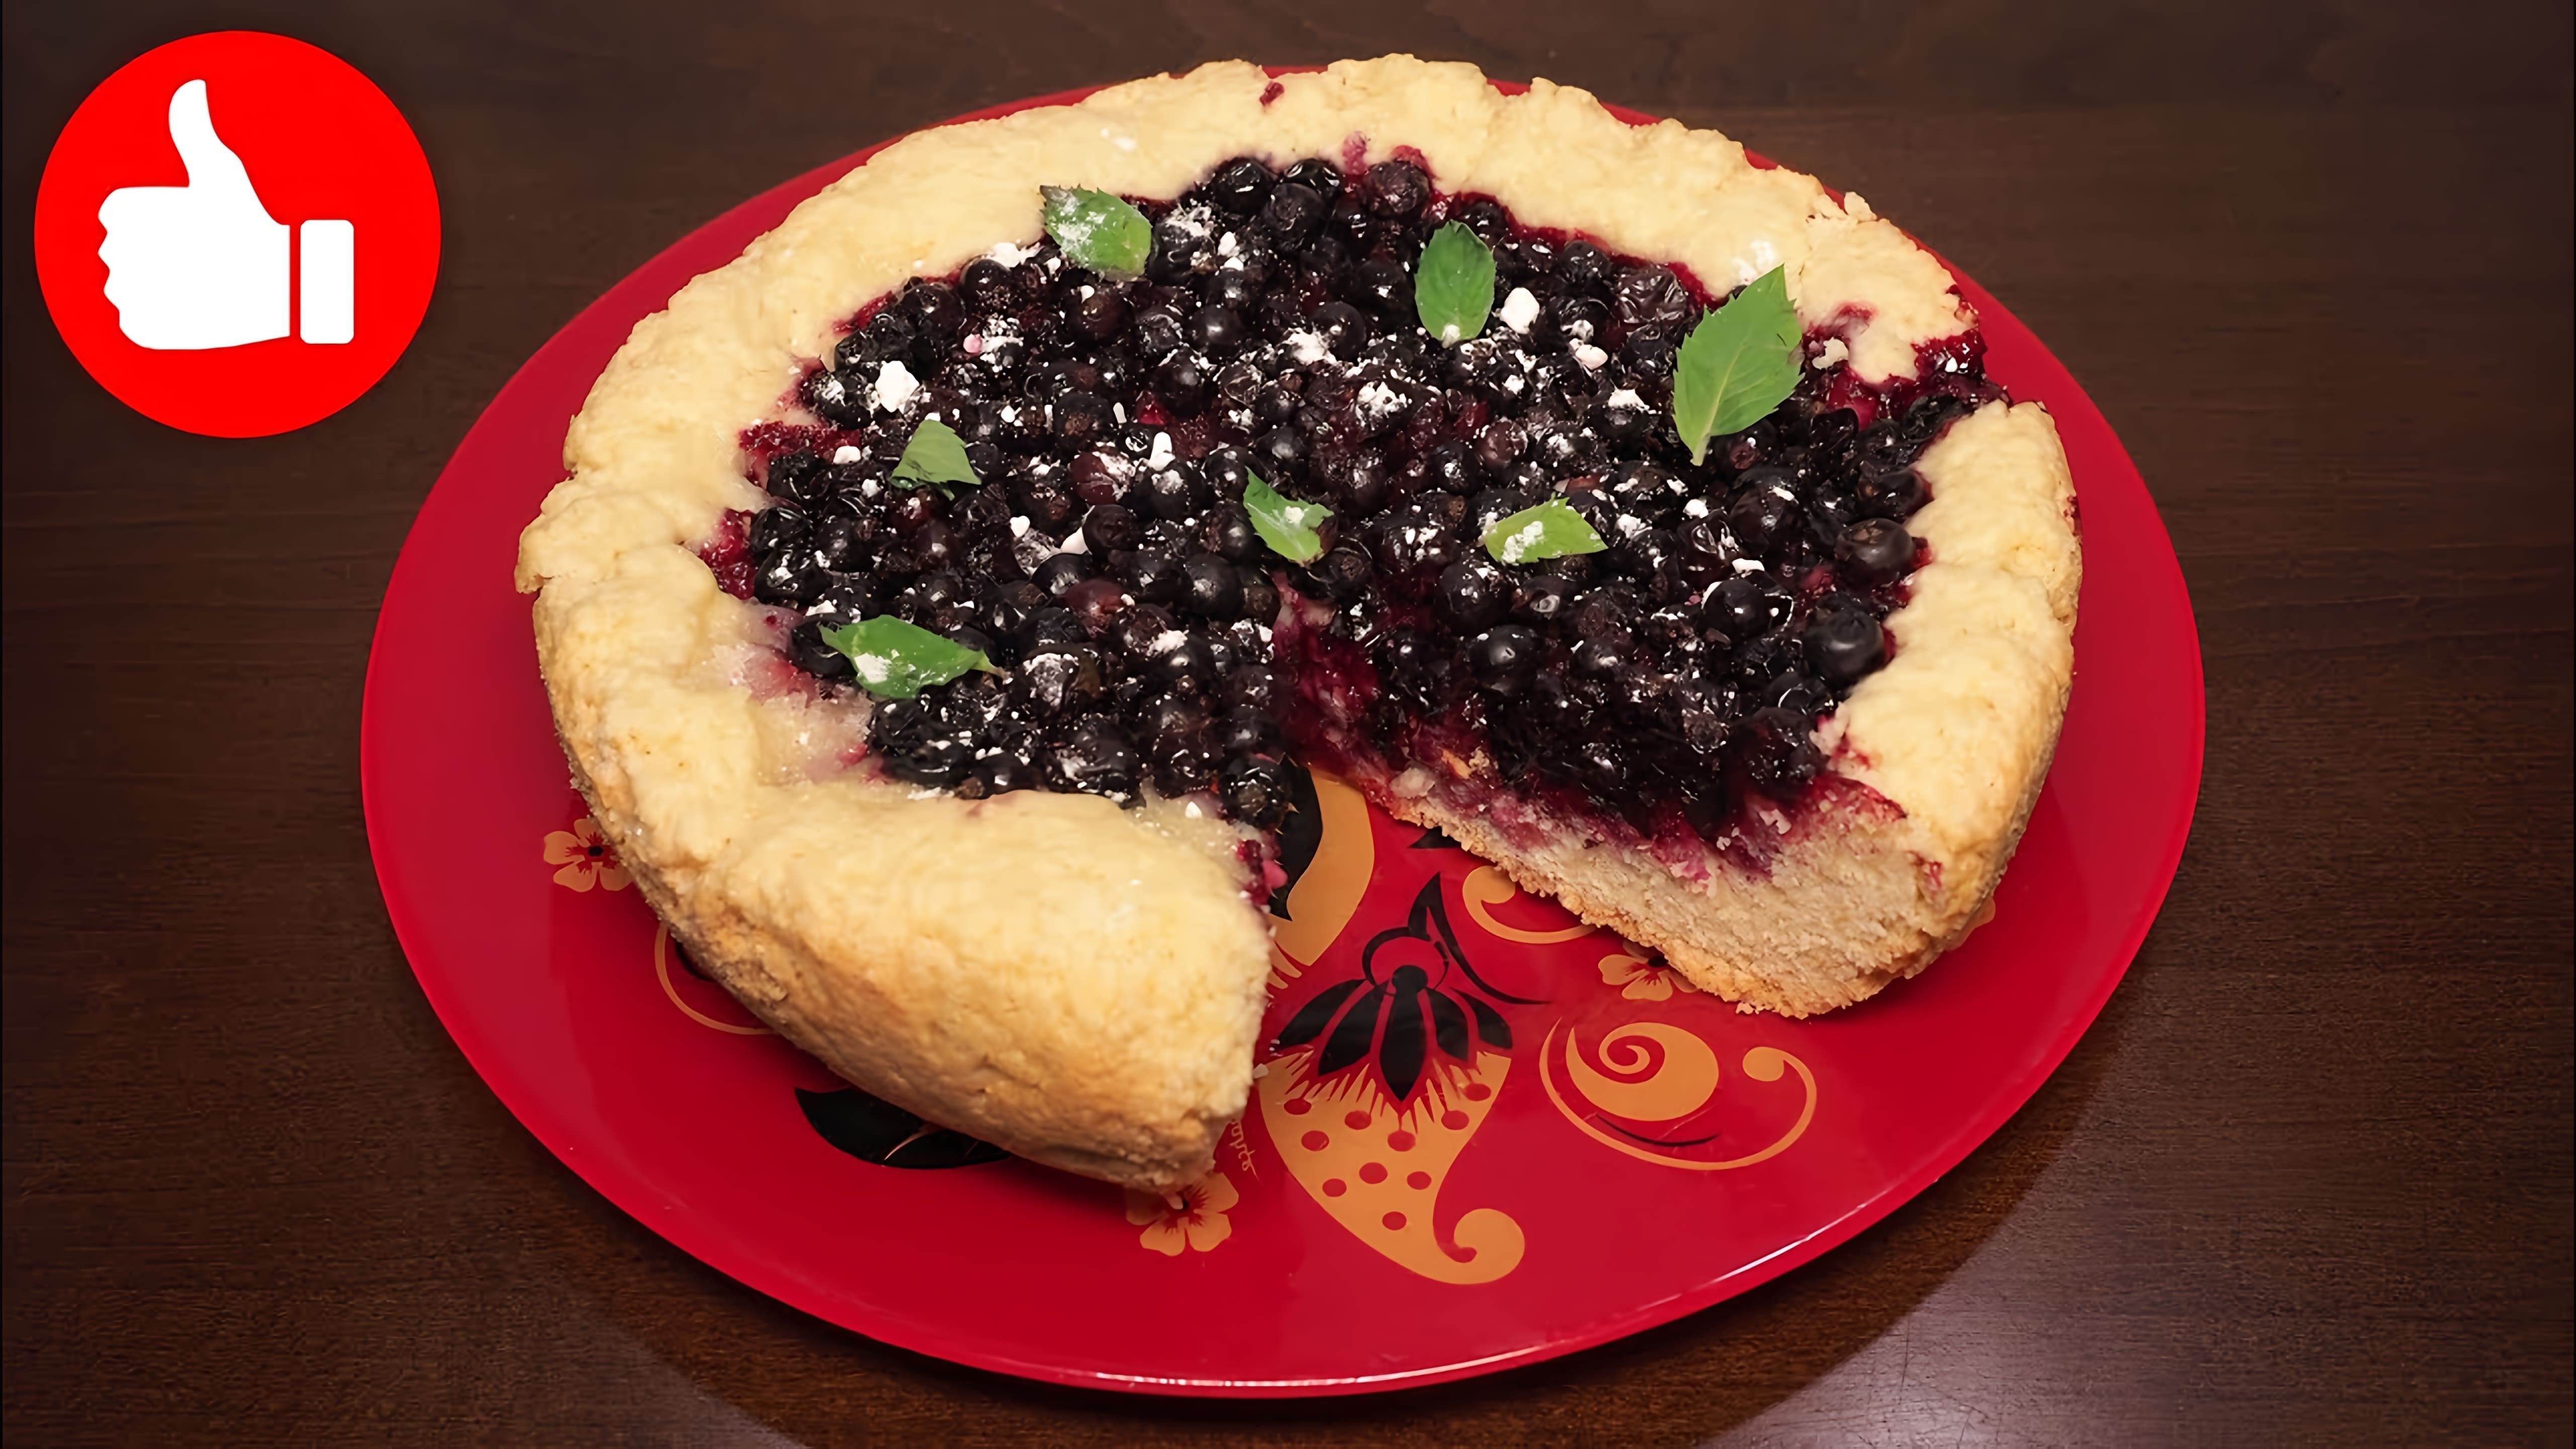 В этом видео демонстрируется рецепт приготовления открытого пирога с ягодами в мультиварке